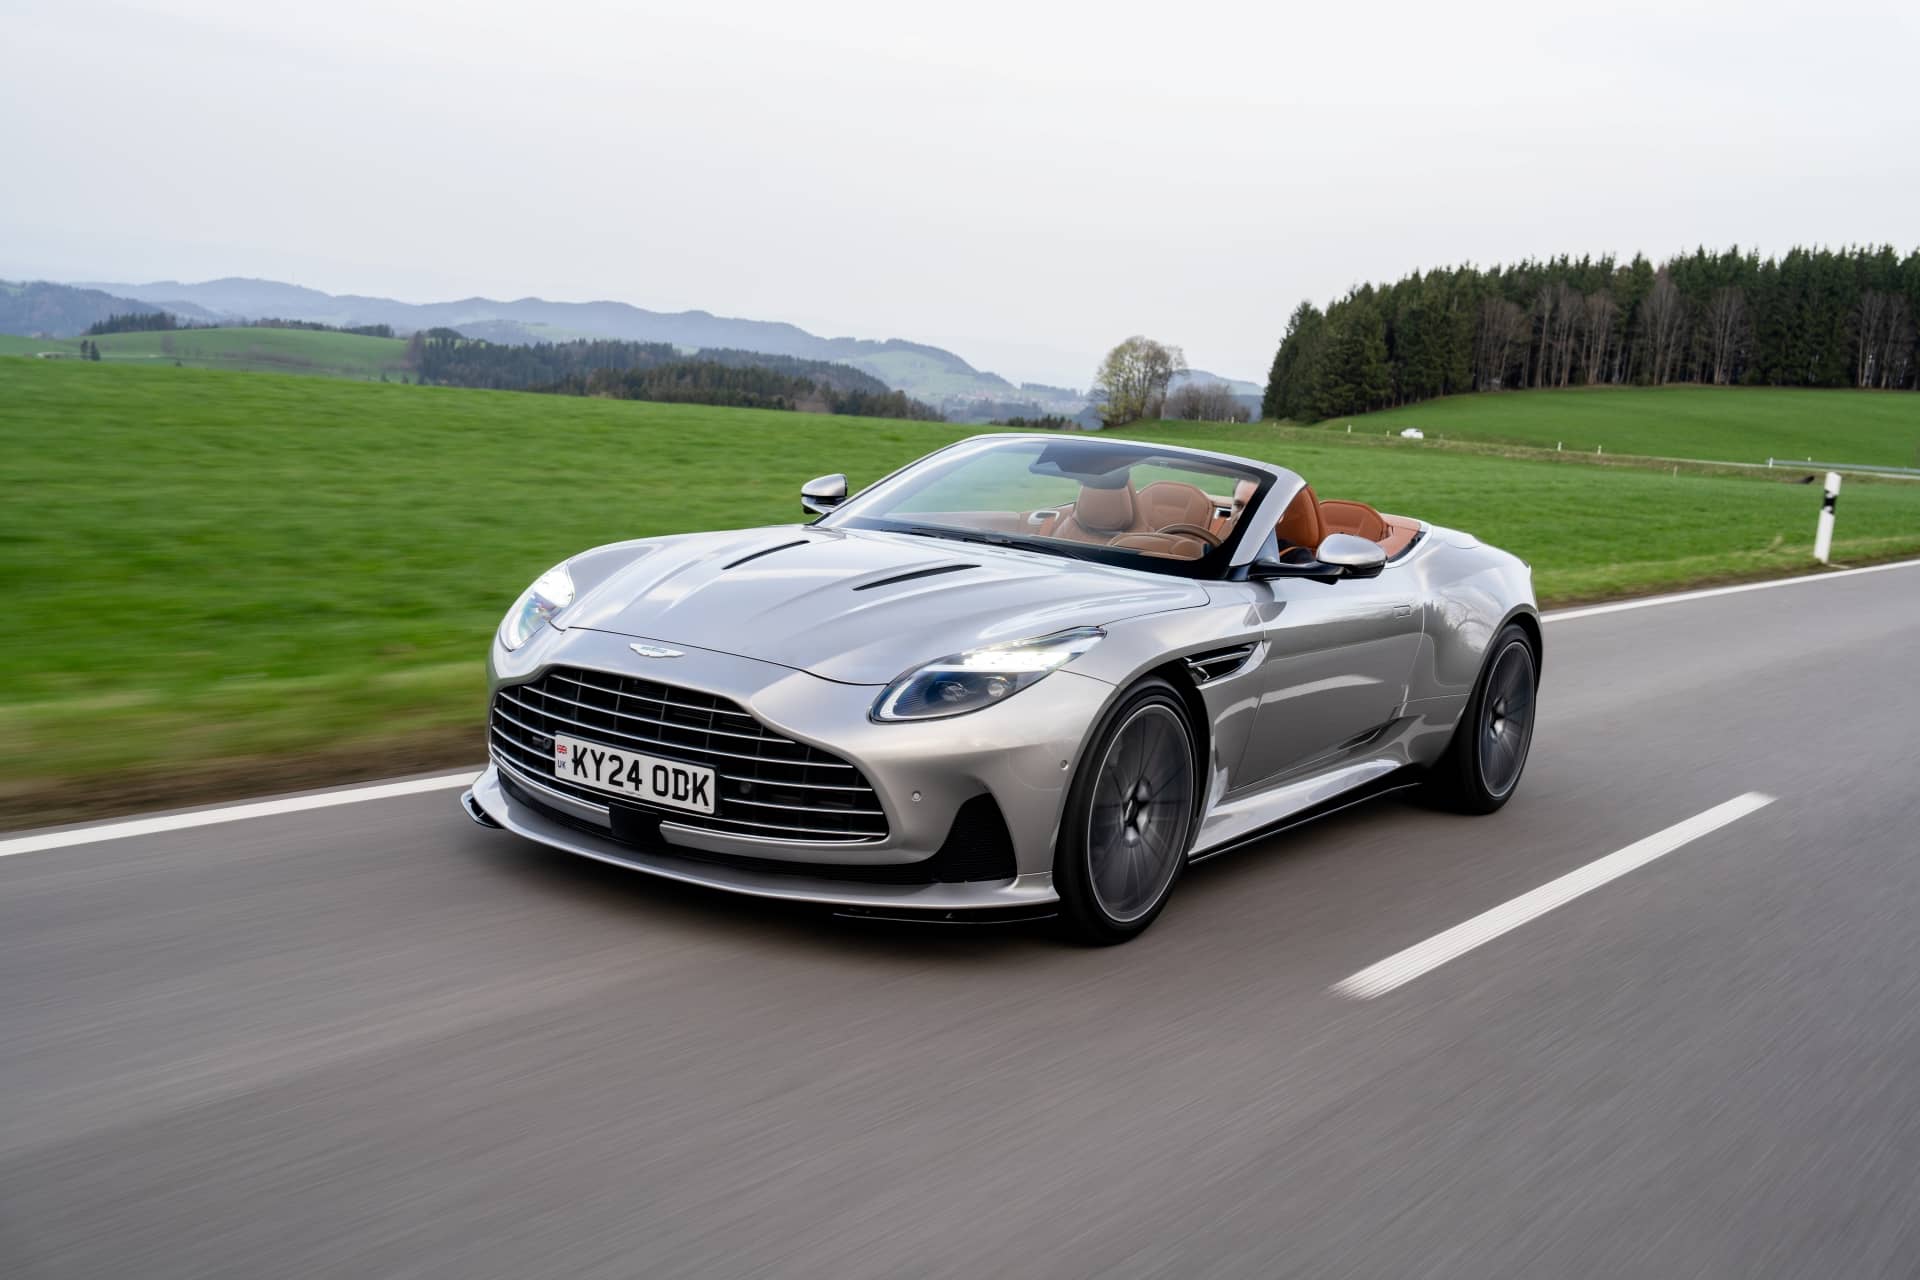 Aston Martin inaugura la era del Super Turismo, tiene 680 CV y ya lo hemos puesto a prueba